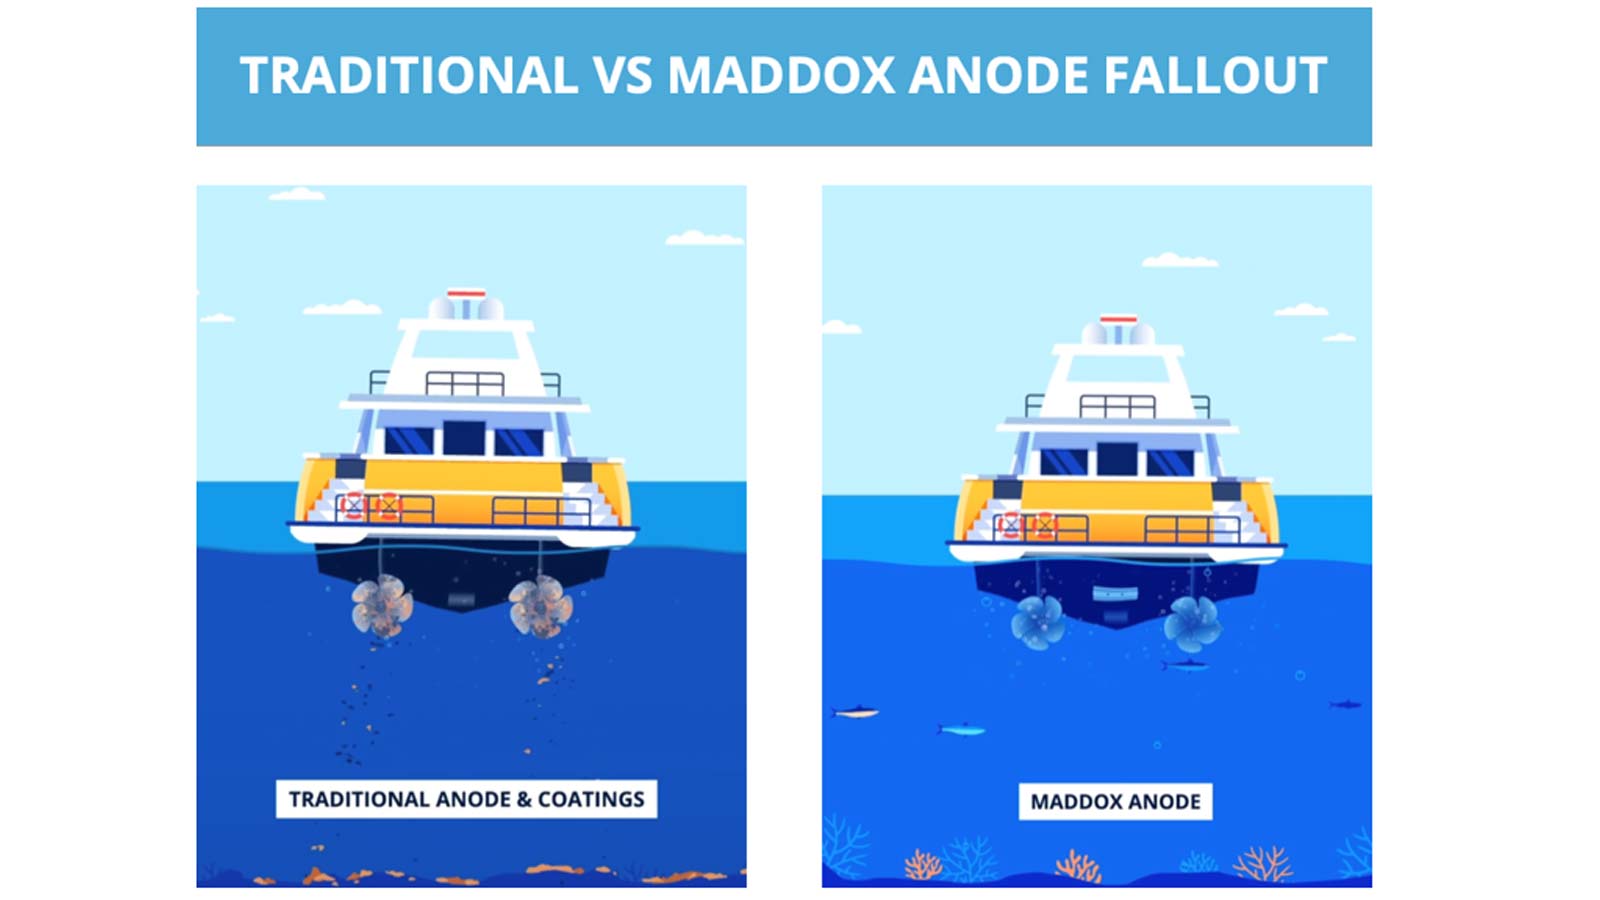 Traditional vs. Maddox anode fallout comparison